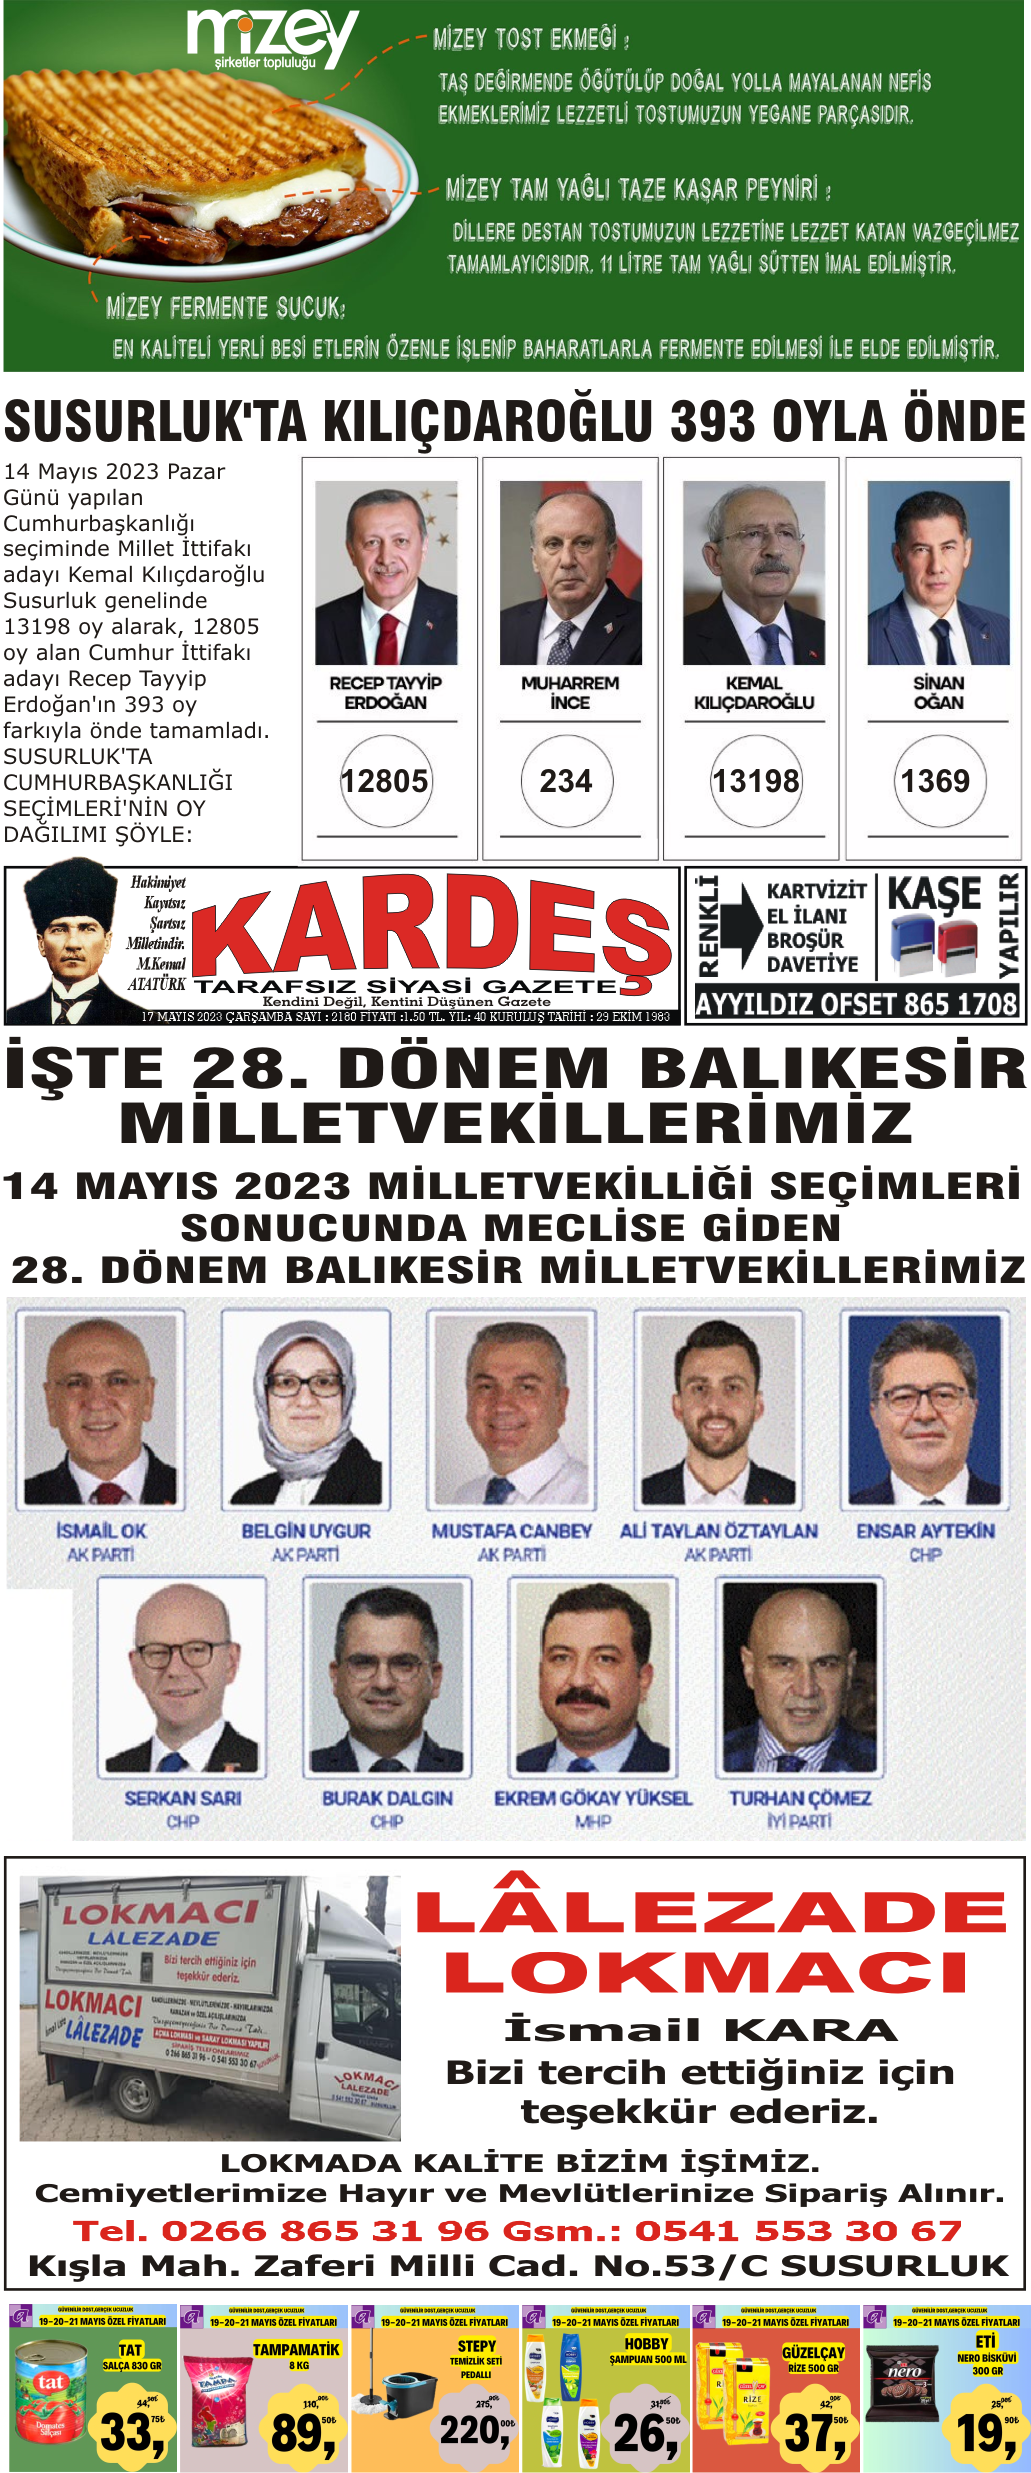 17.05.2023 Tarihli Kardeş Gazetesi